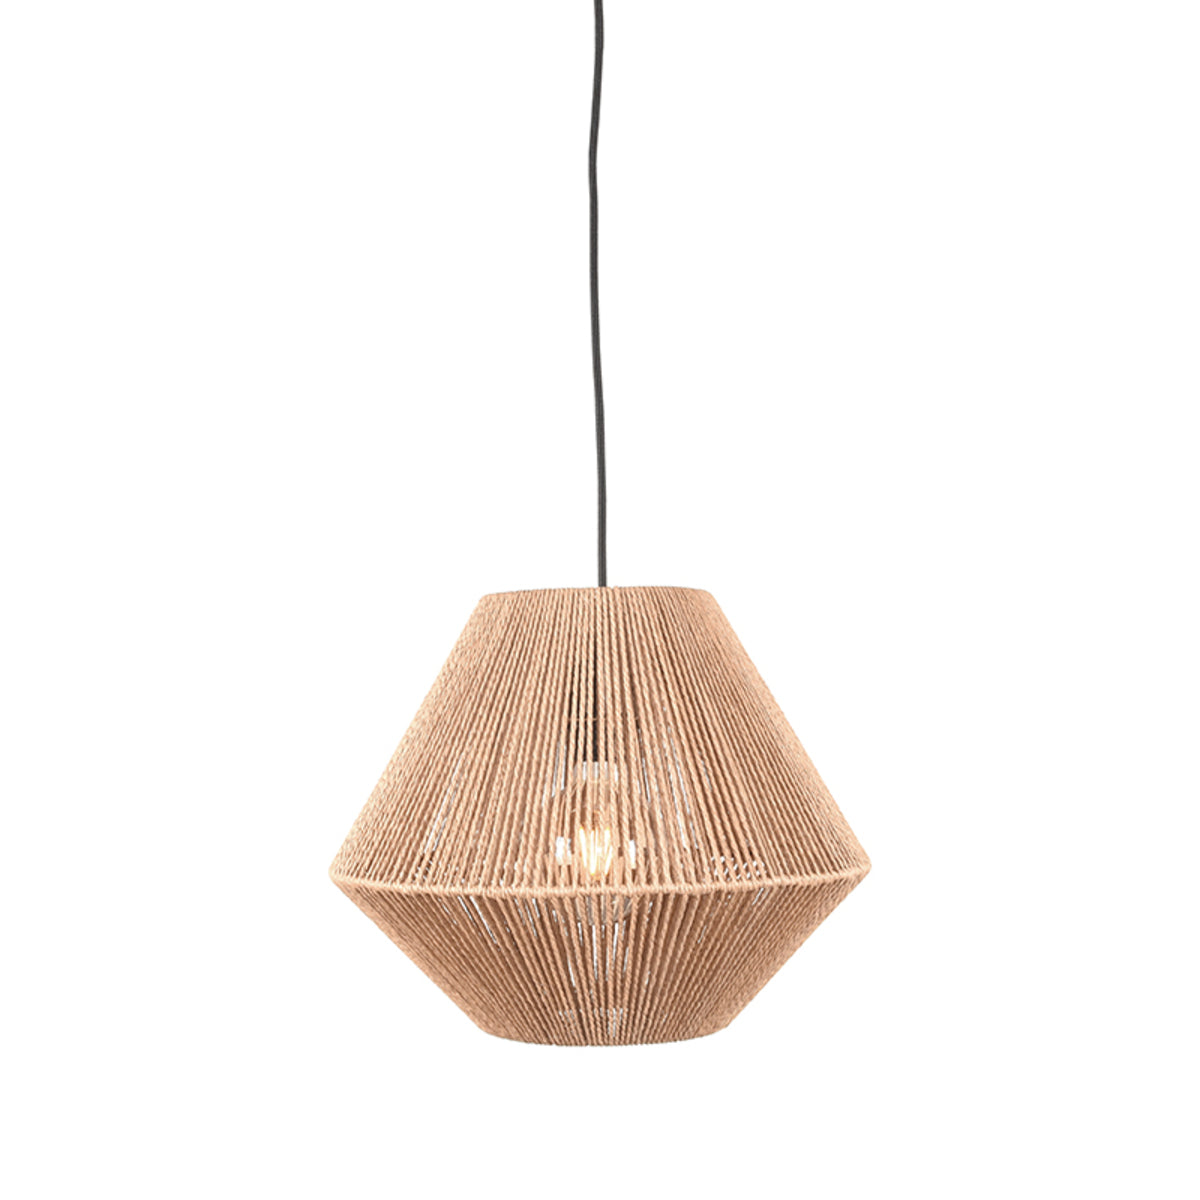 LABEL51 Hanging lamp Ibiza - Natural - Jute - 1-Light